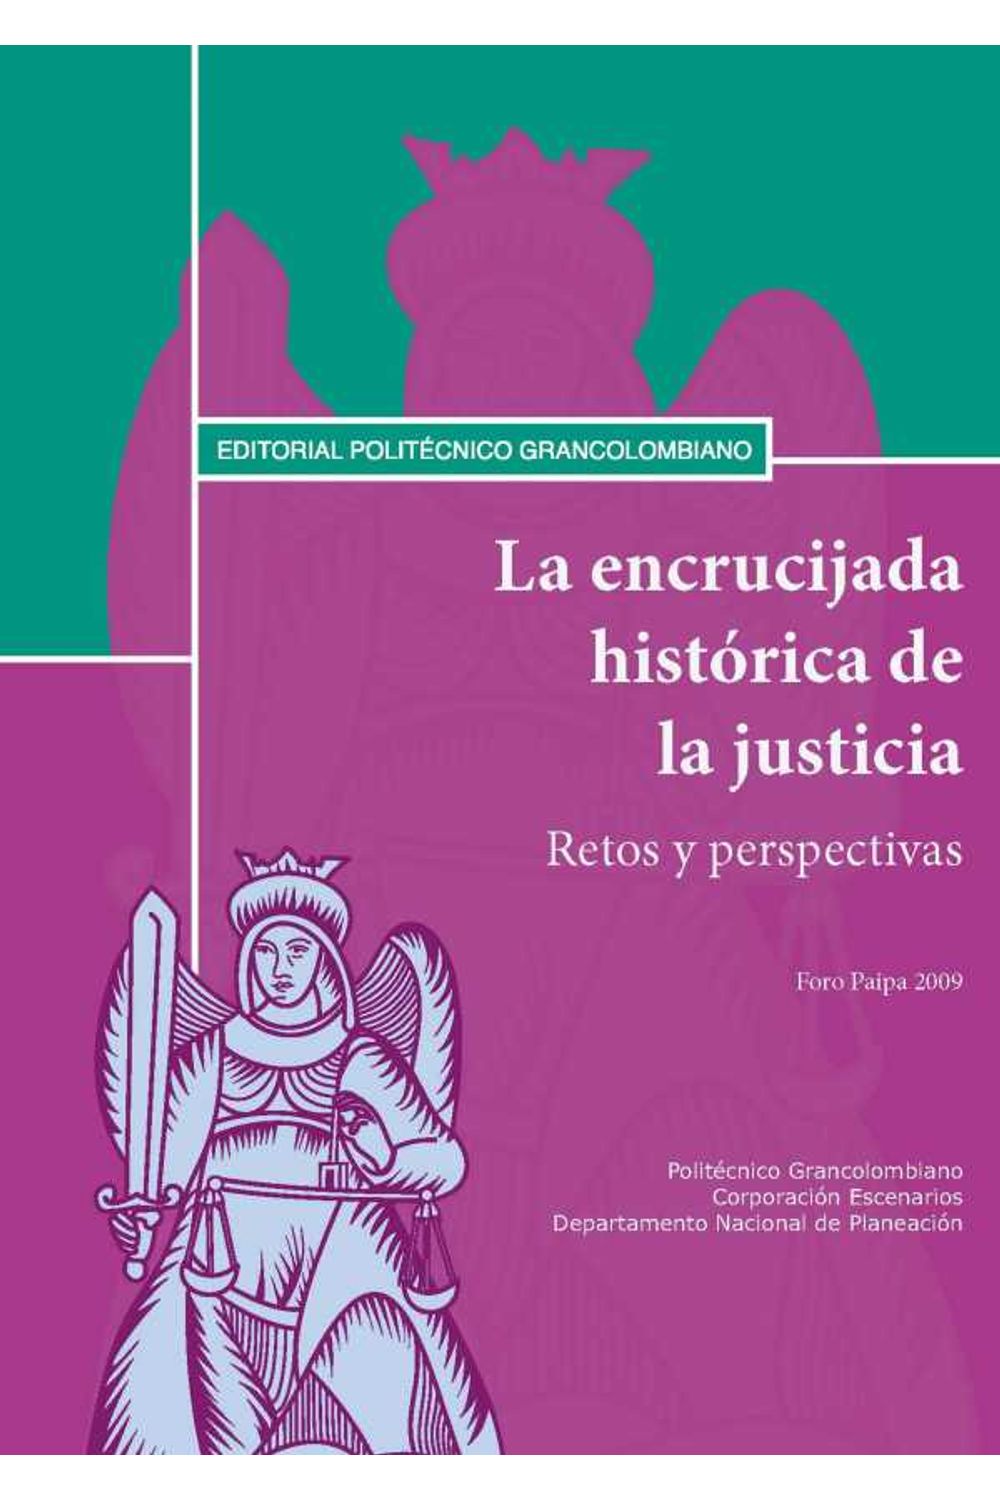 bw-la-encrucijada-histoacuterica-de-la-justicia-retos-y-perspectivas-foro-paipa-2009-politecnico-grancolombiano-9789588085777